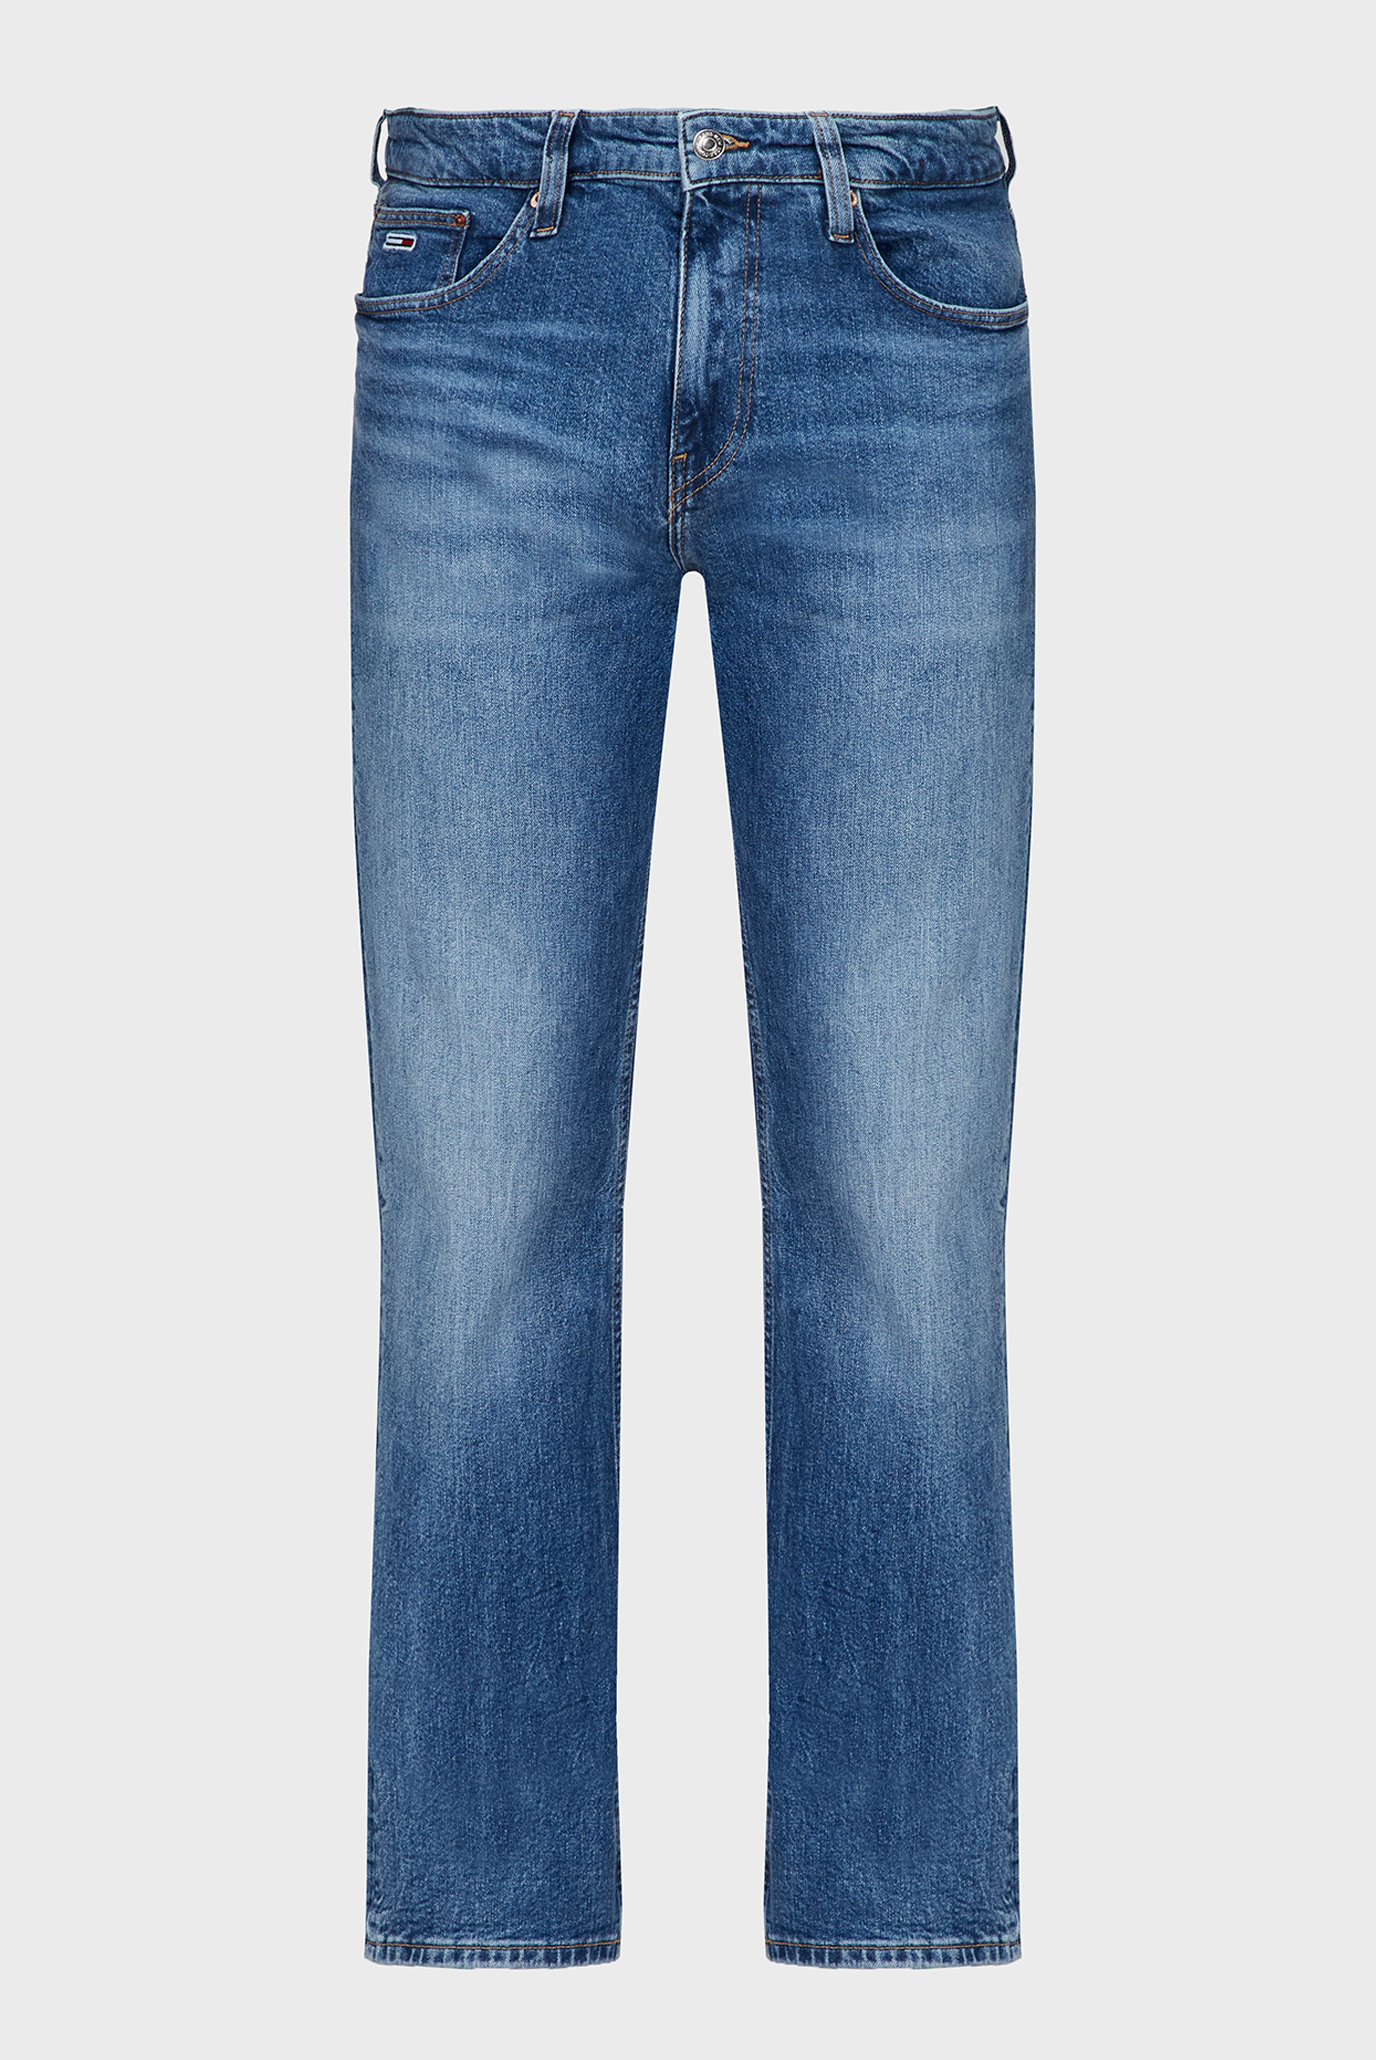 Чоловічі сині джинси RYAN RGLR STRGHT CG5136 1